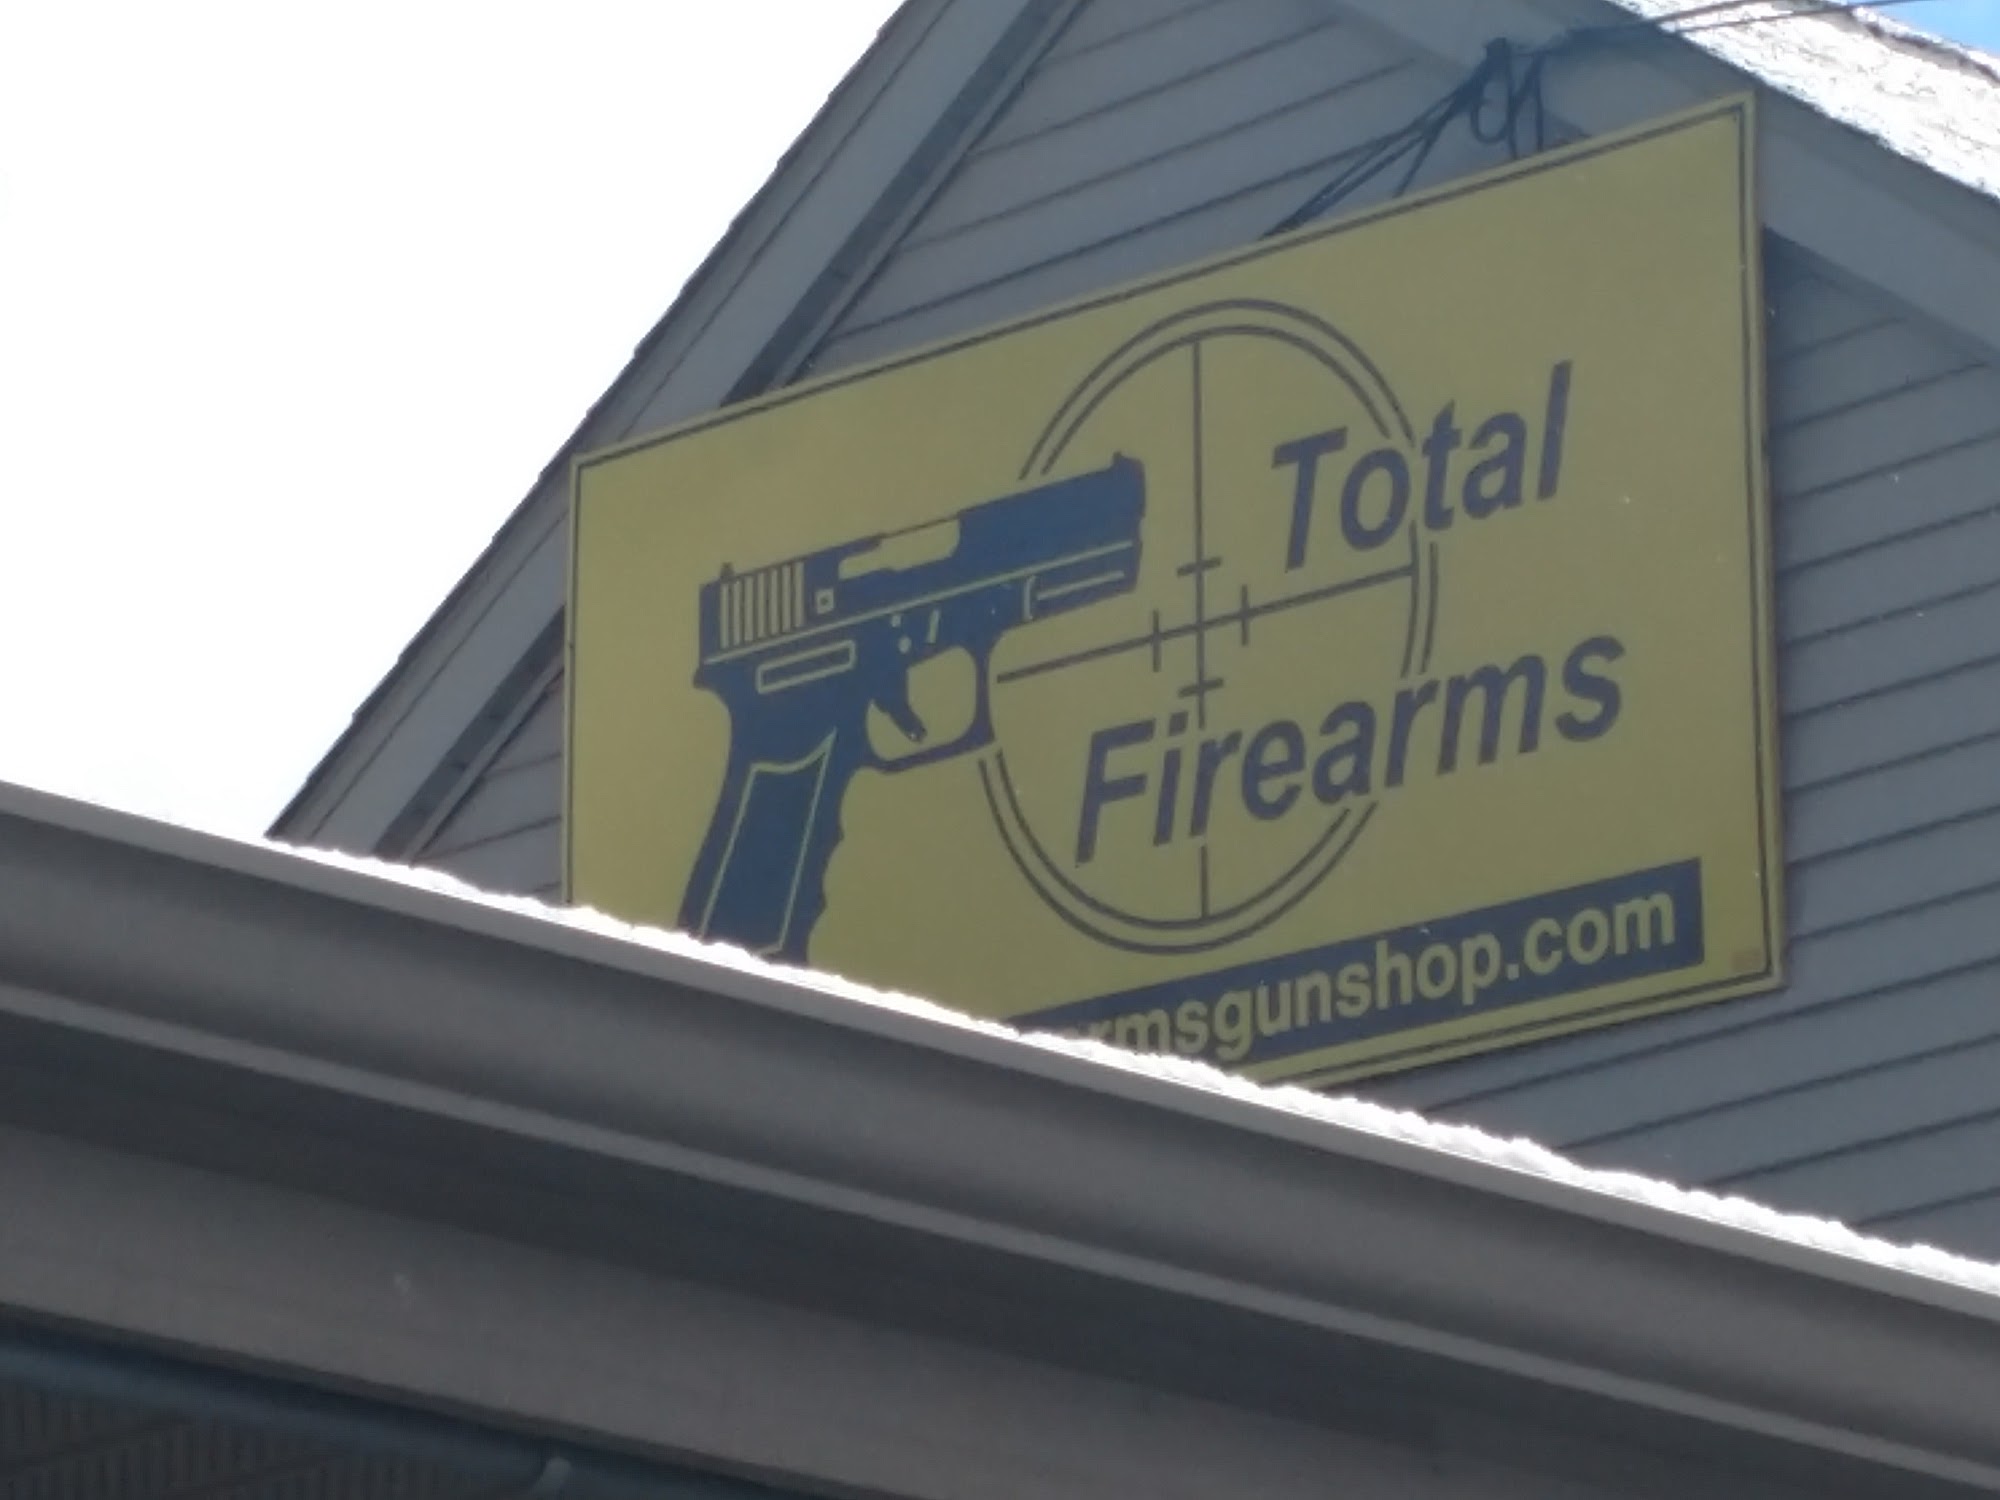 Total Firearms